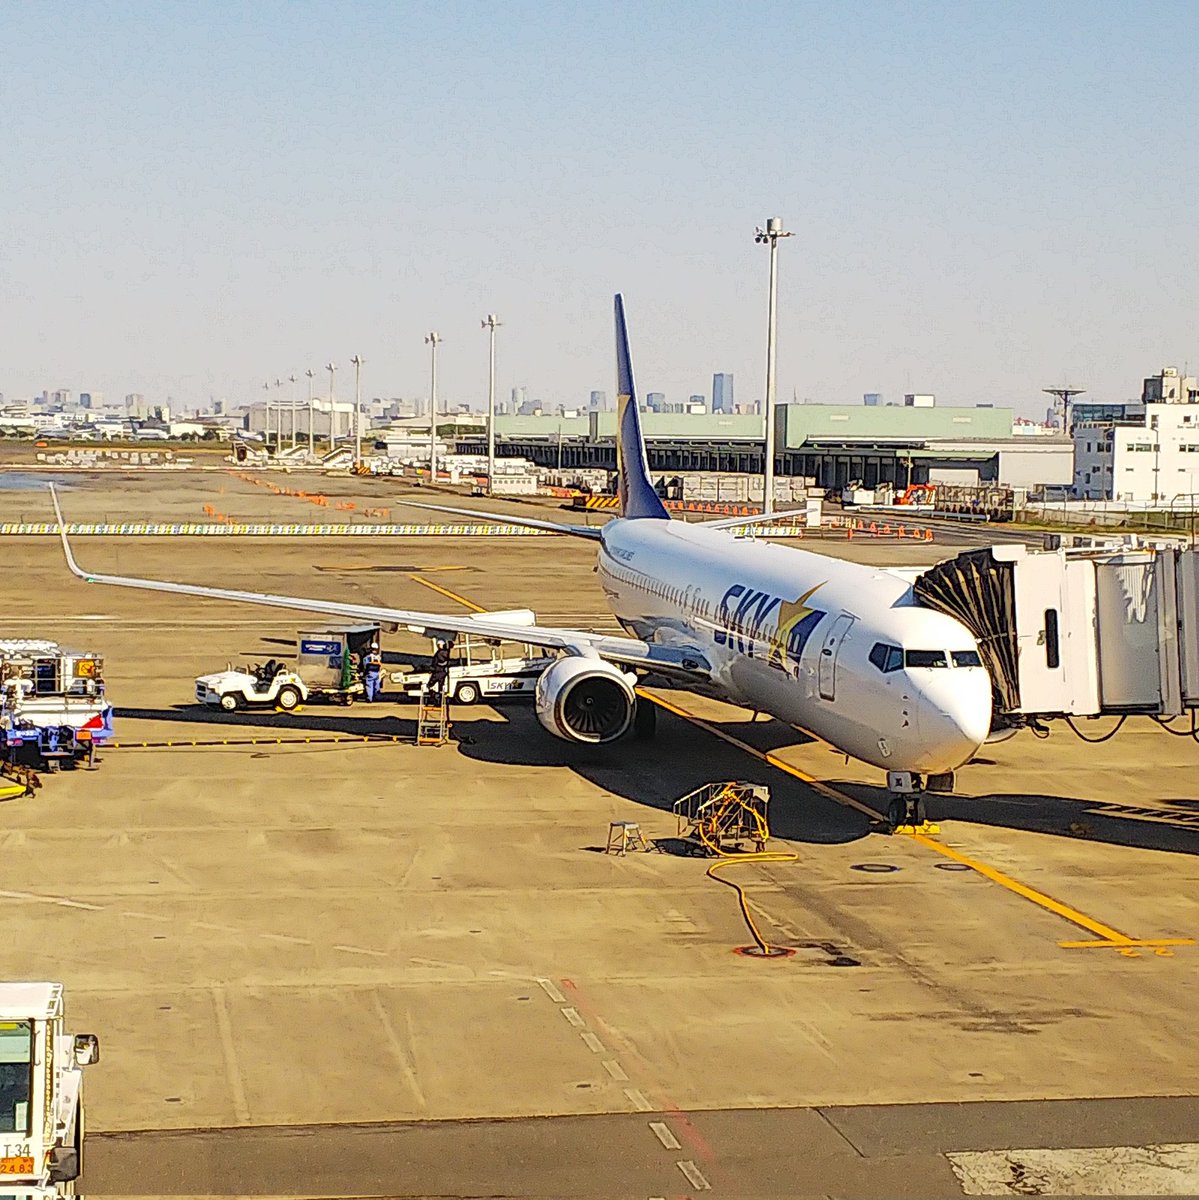 機材繰りの関係で少々遅れながらもこれから札幌へ向かいます。

BC/SKY705
Boring737-800:JA73NQ
#スカイマーク
#skymark
#羽田空港